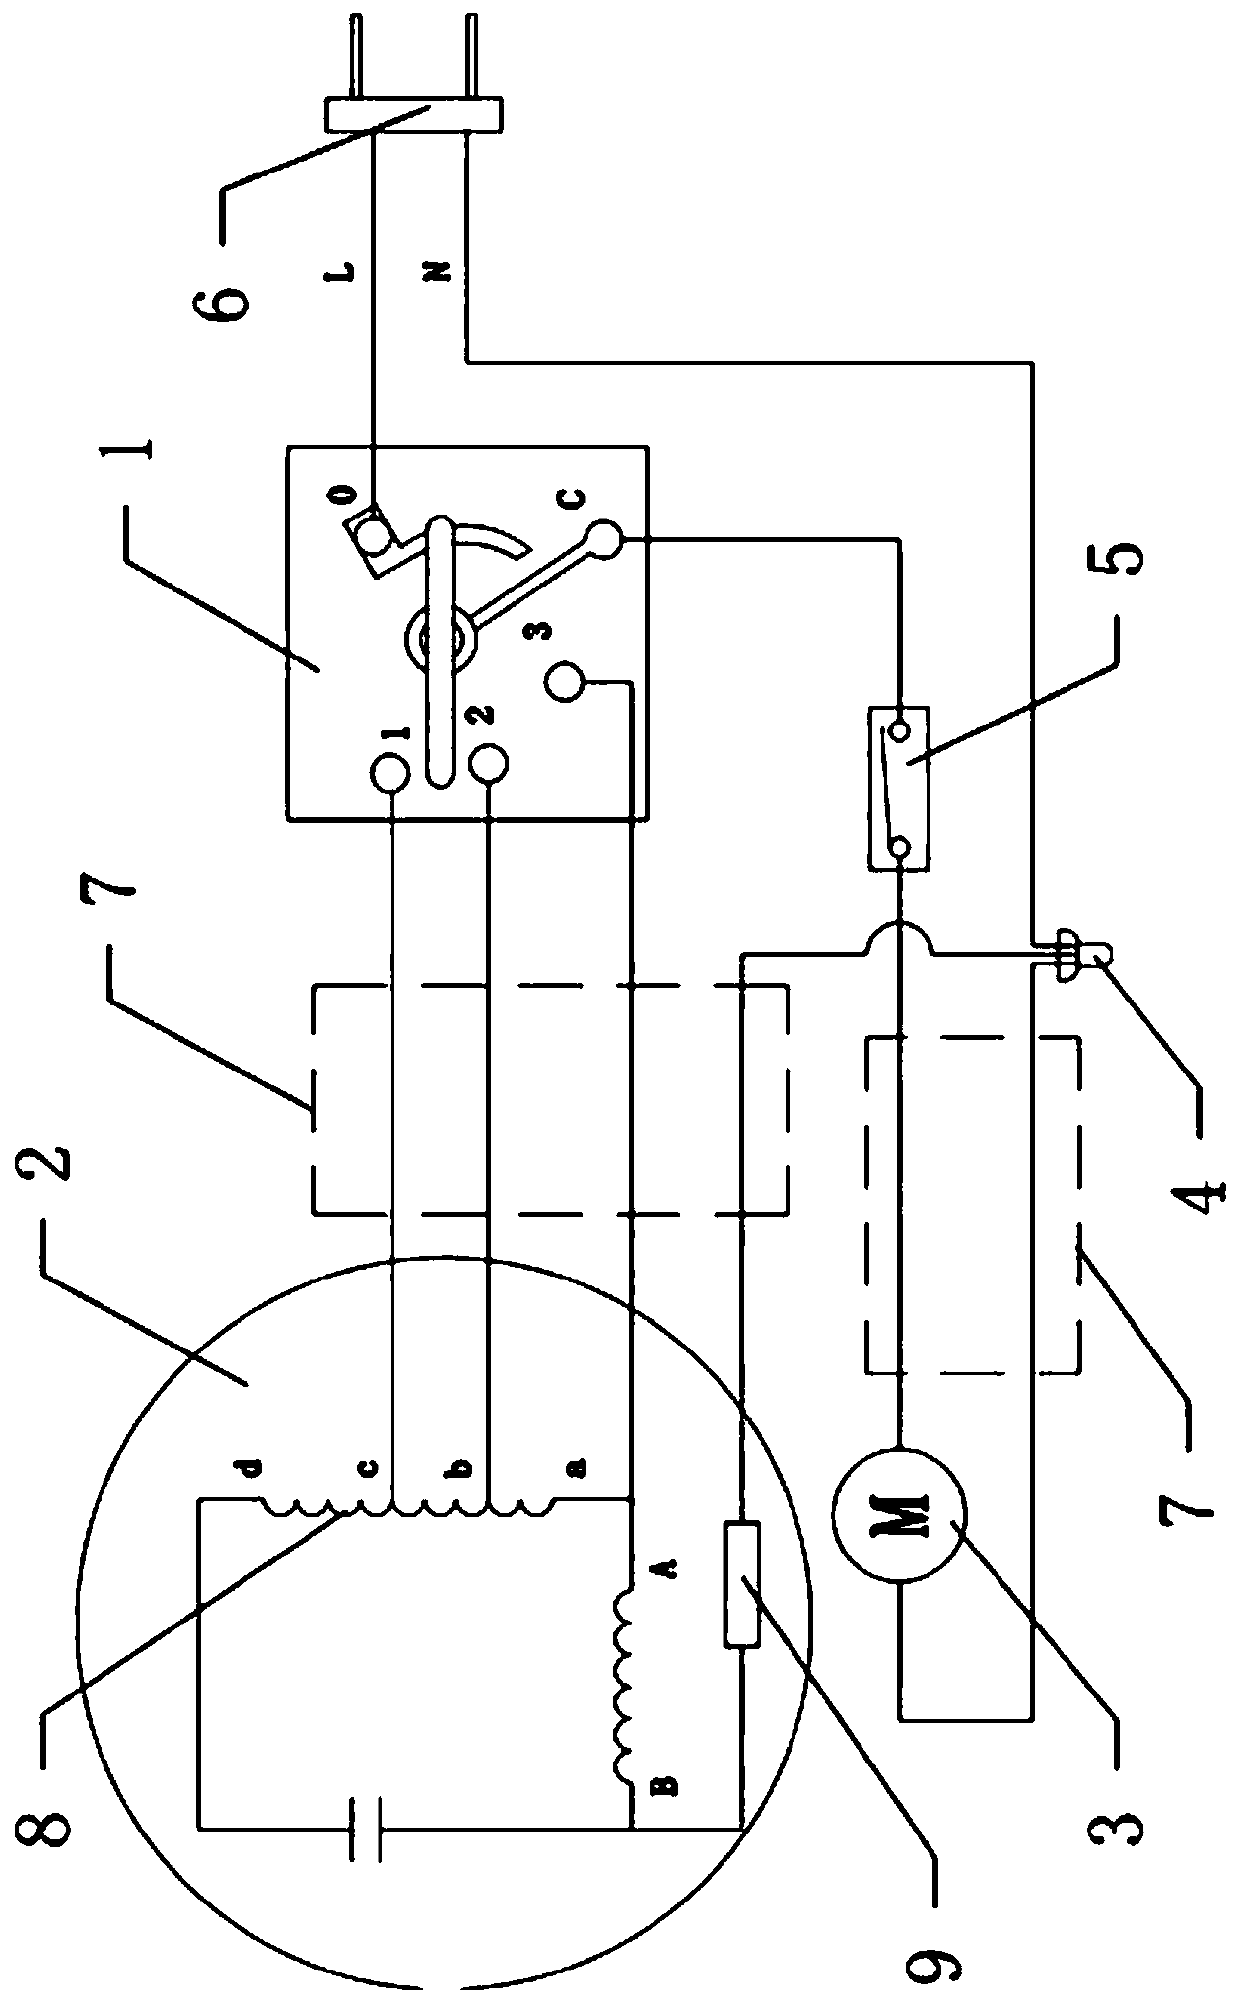 Wiring circuit of wall fan motor